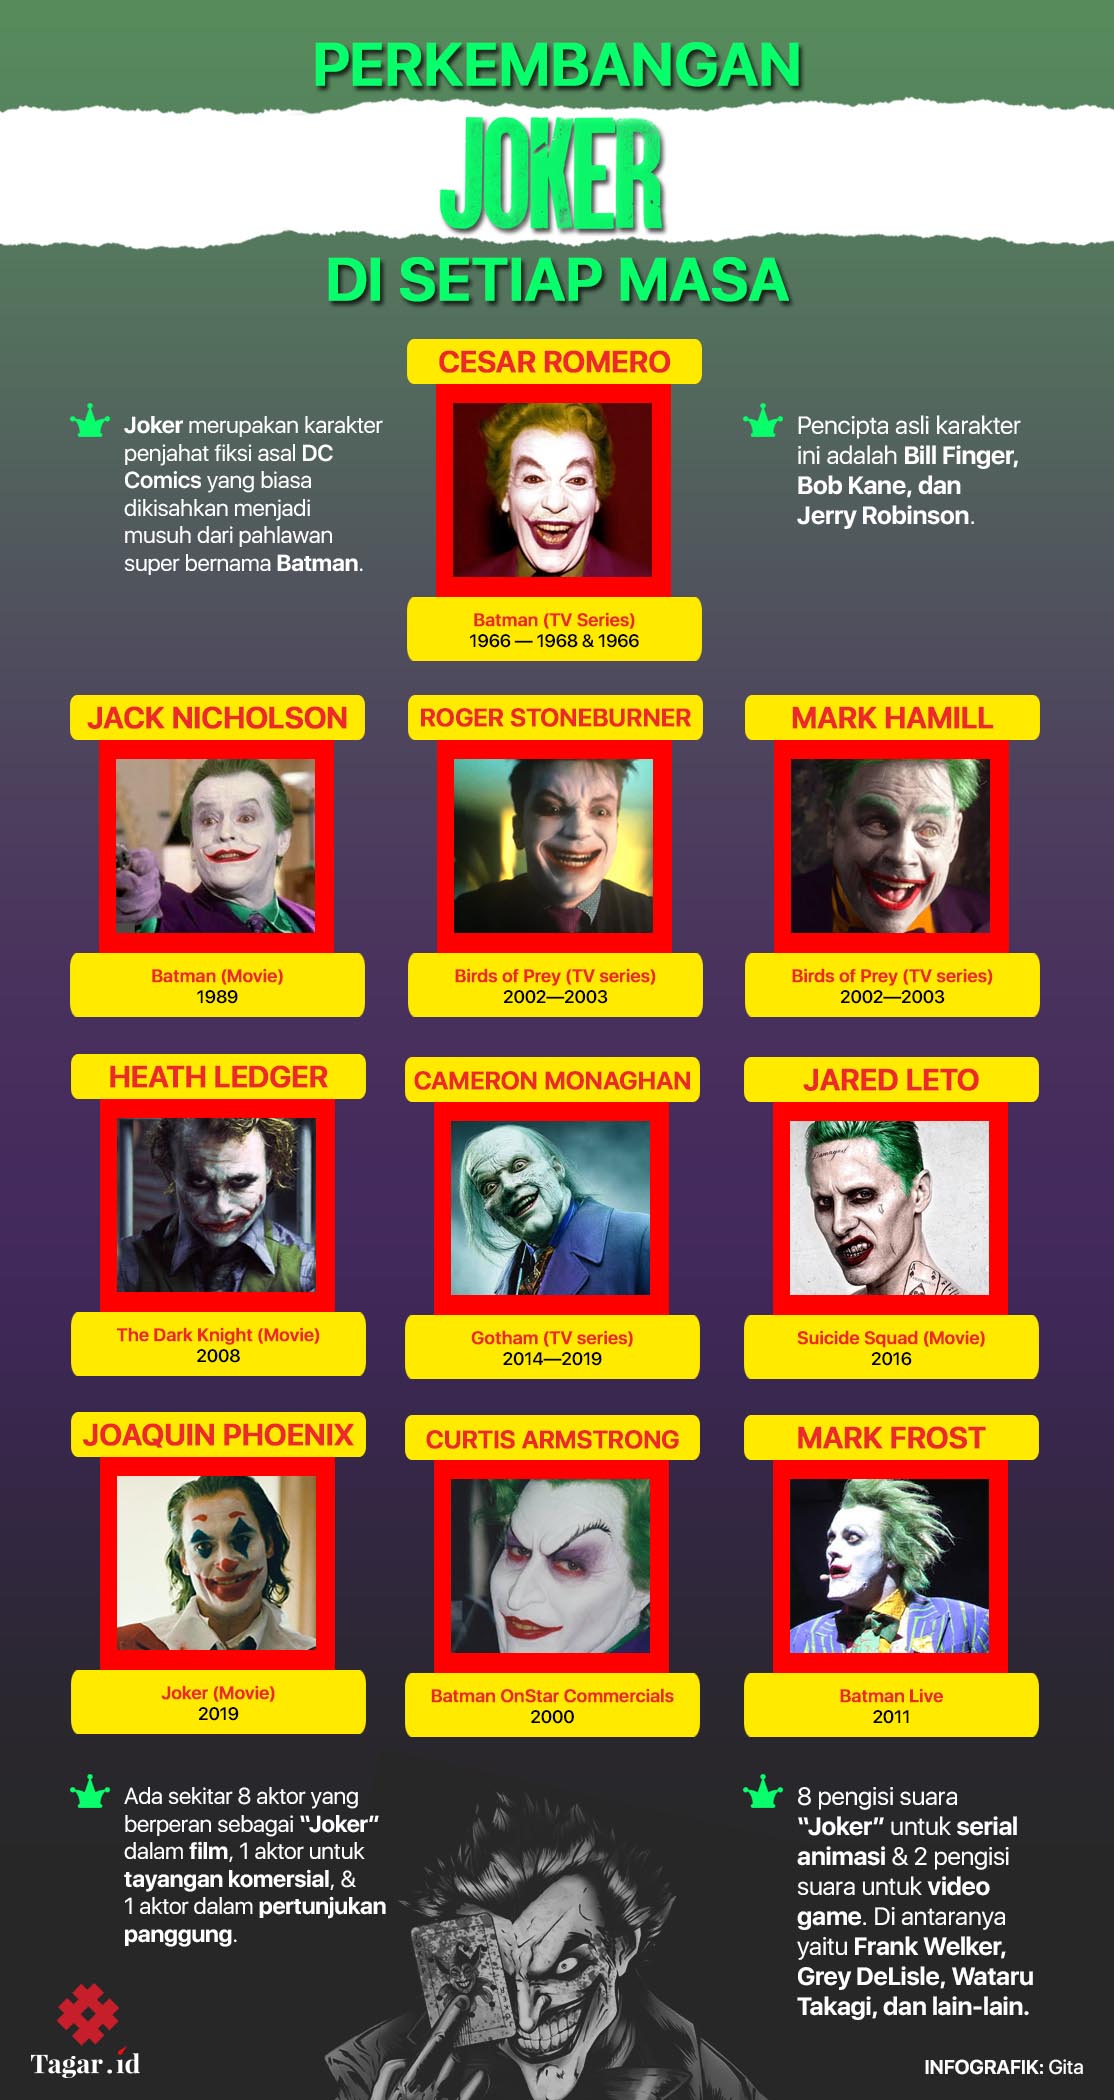 Karakter Joker